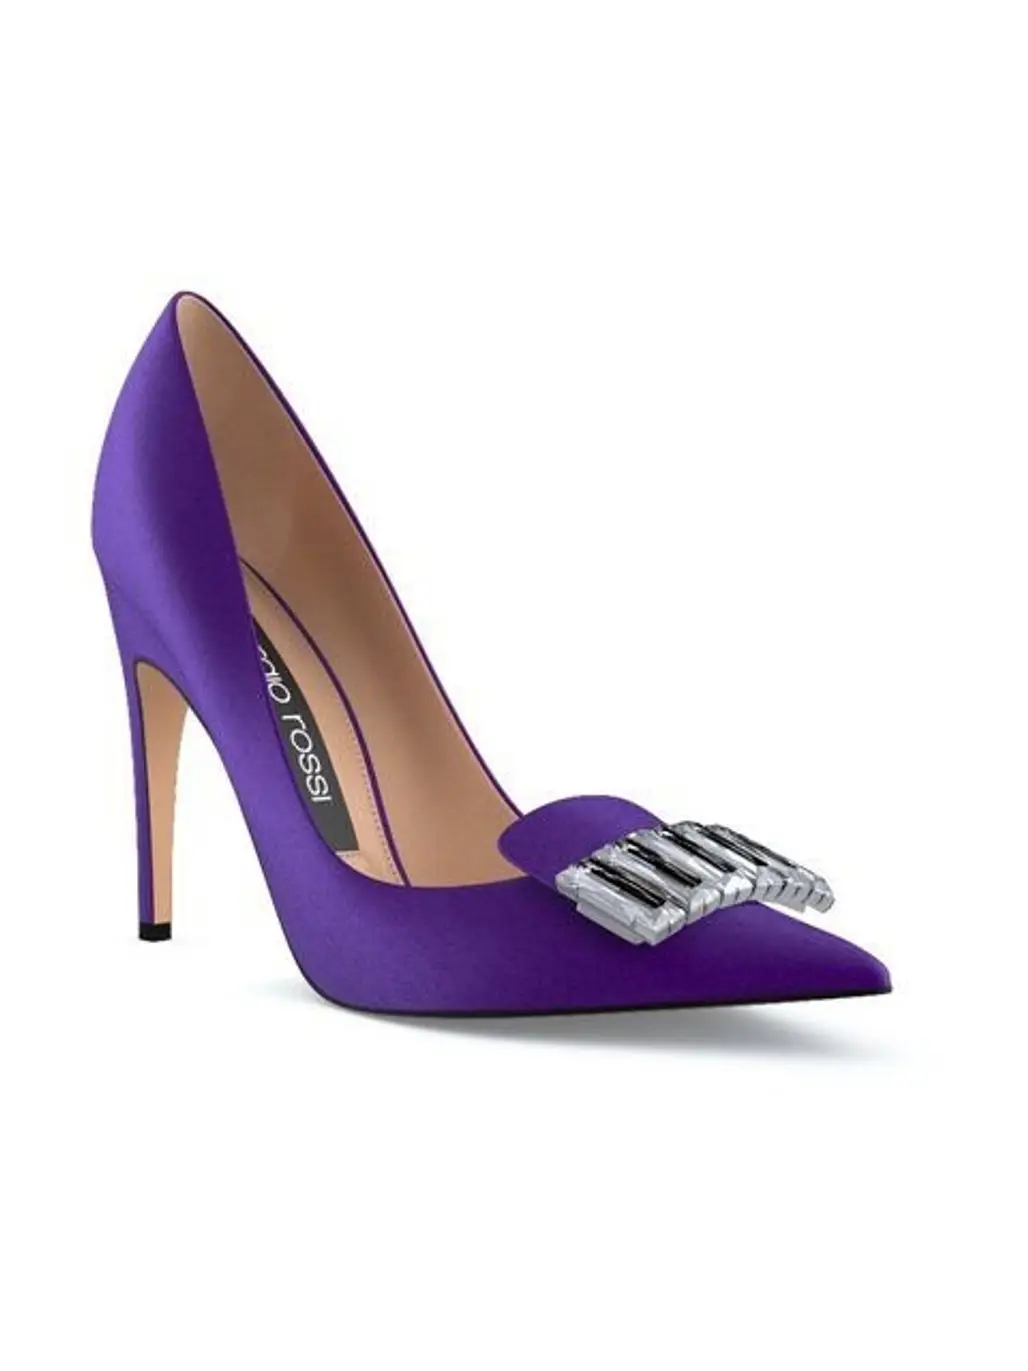 Footwear, High heels, Violet, Purple, Basic pump,